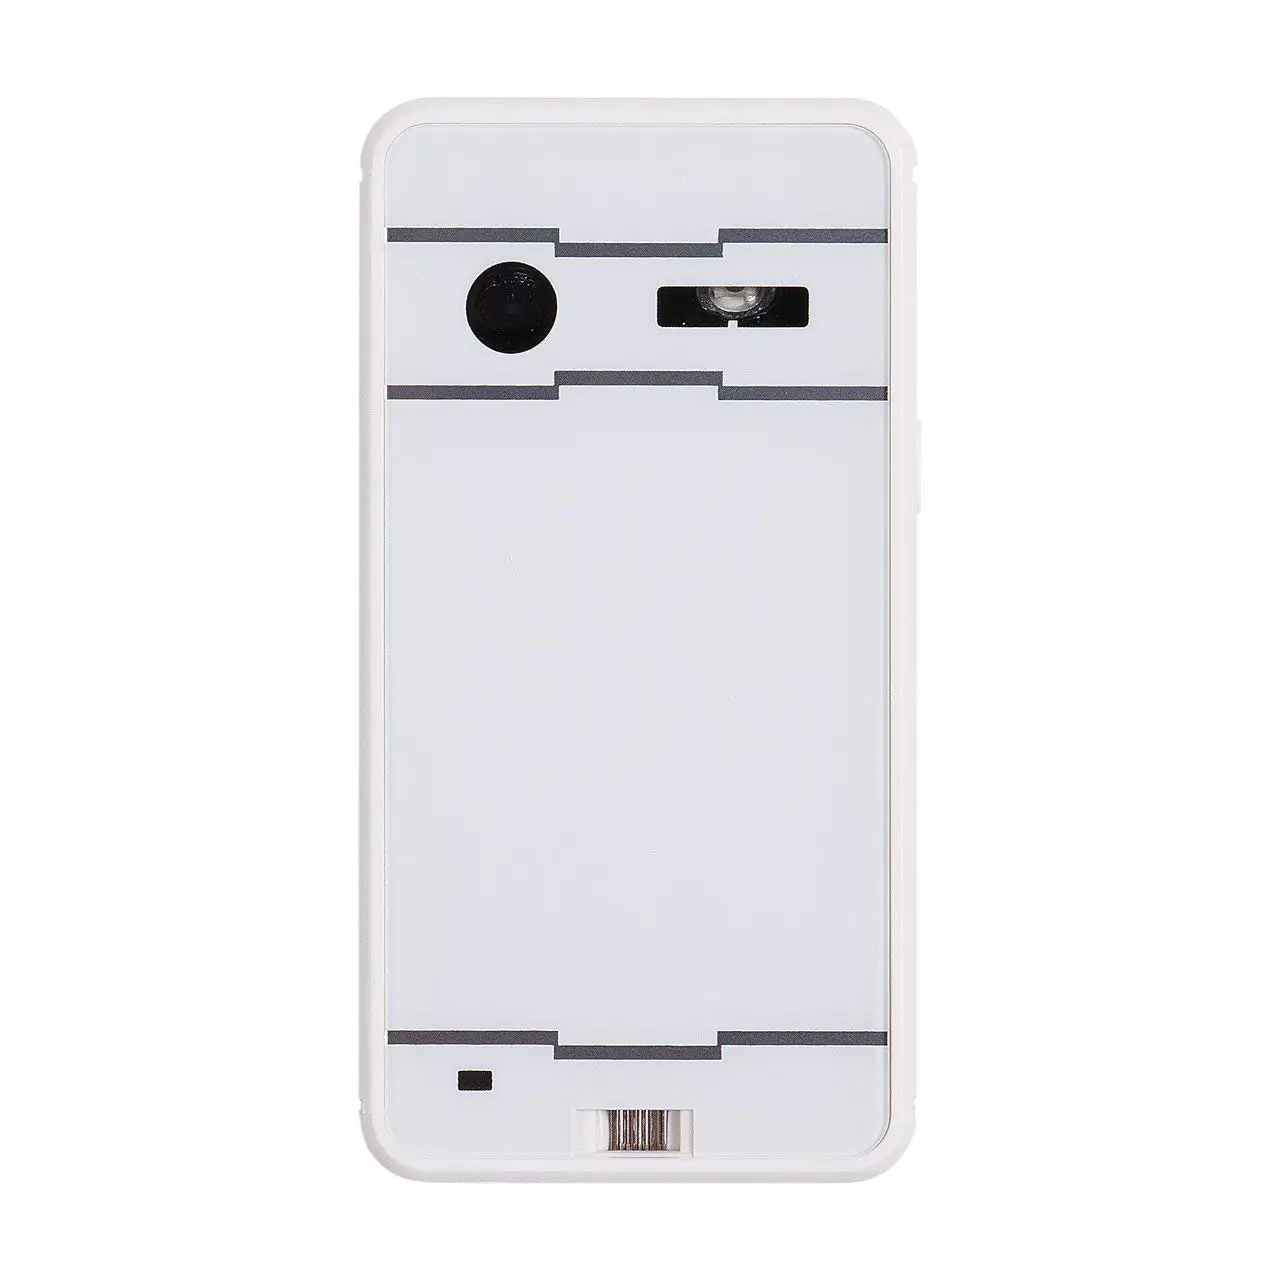 Лазерная клавиатура Bluetooth Беспроводная Виртуальная проекционная клавиатура портативная для Iphone Android смартфон Ipad планшетный ПК ноутбук - Цвет: White